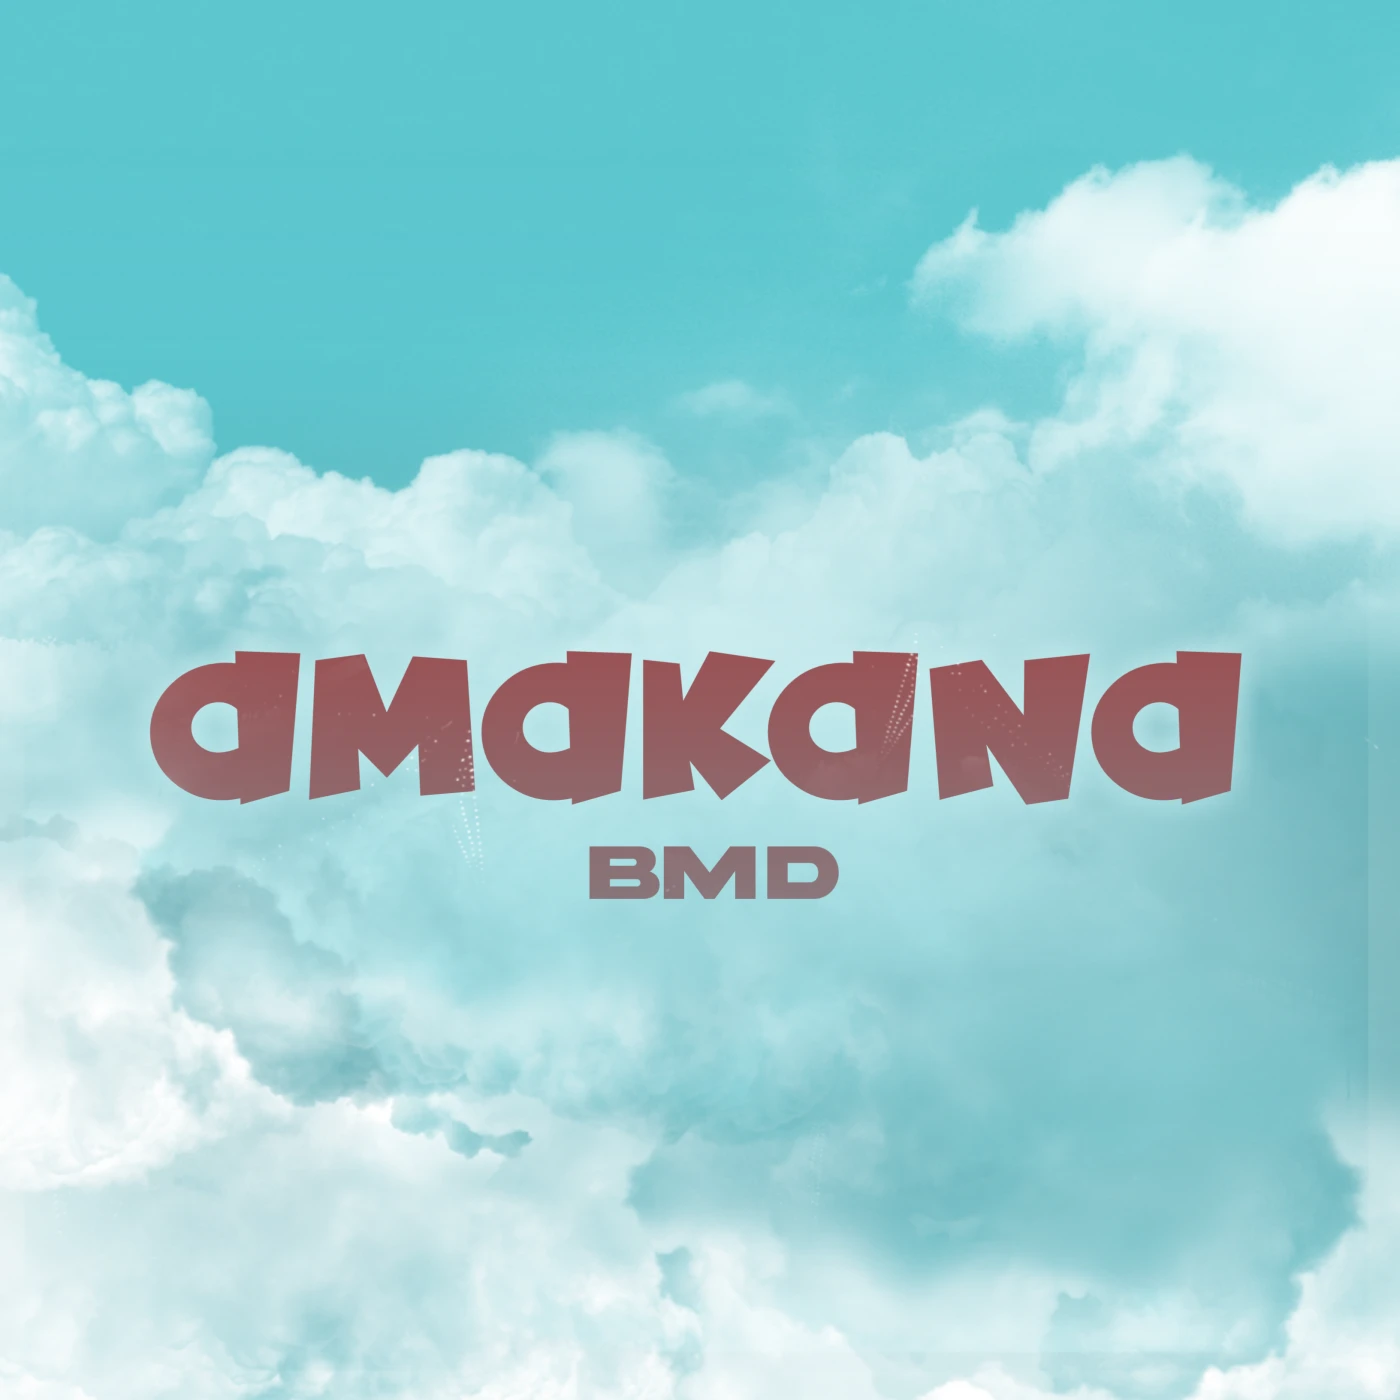 bmd-amakana-bmd-just malawi